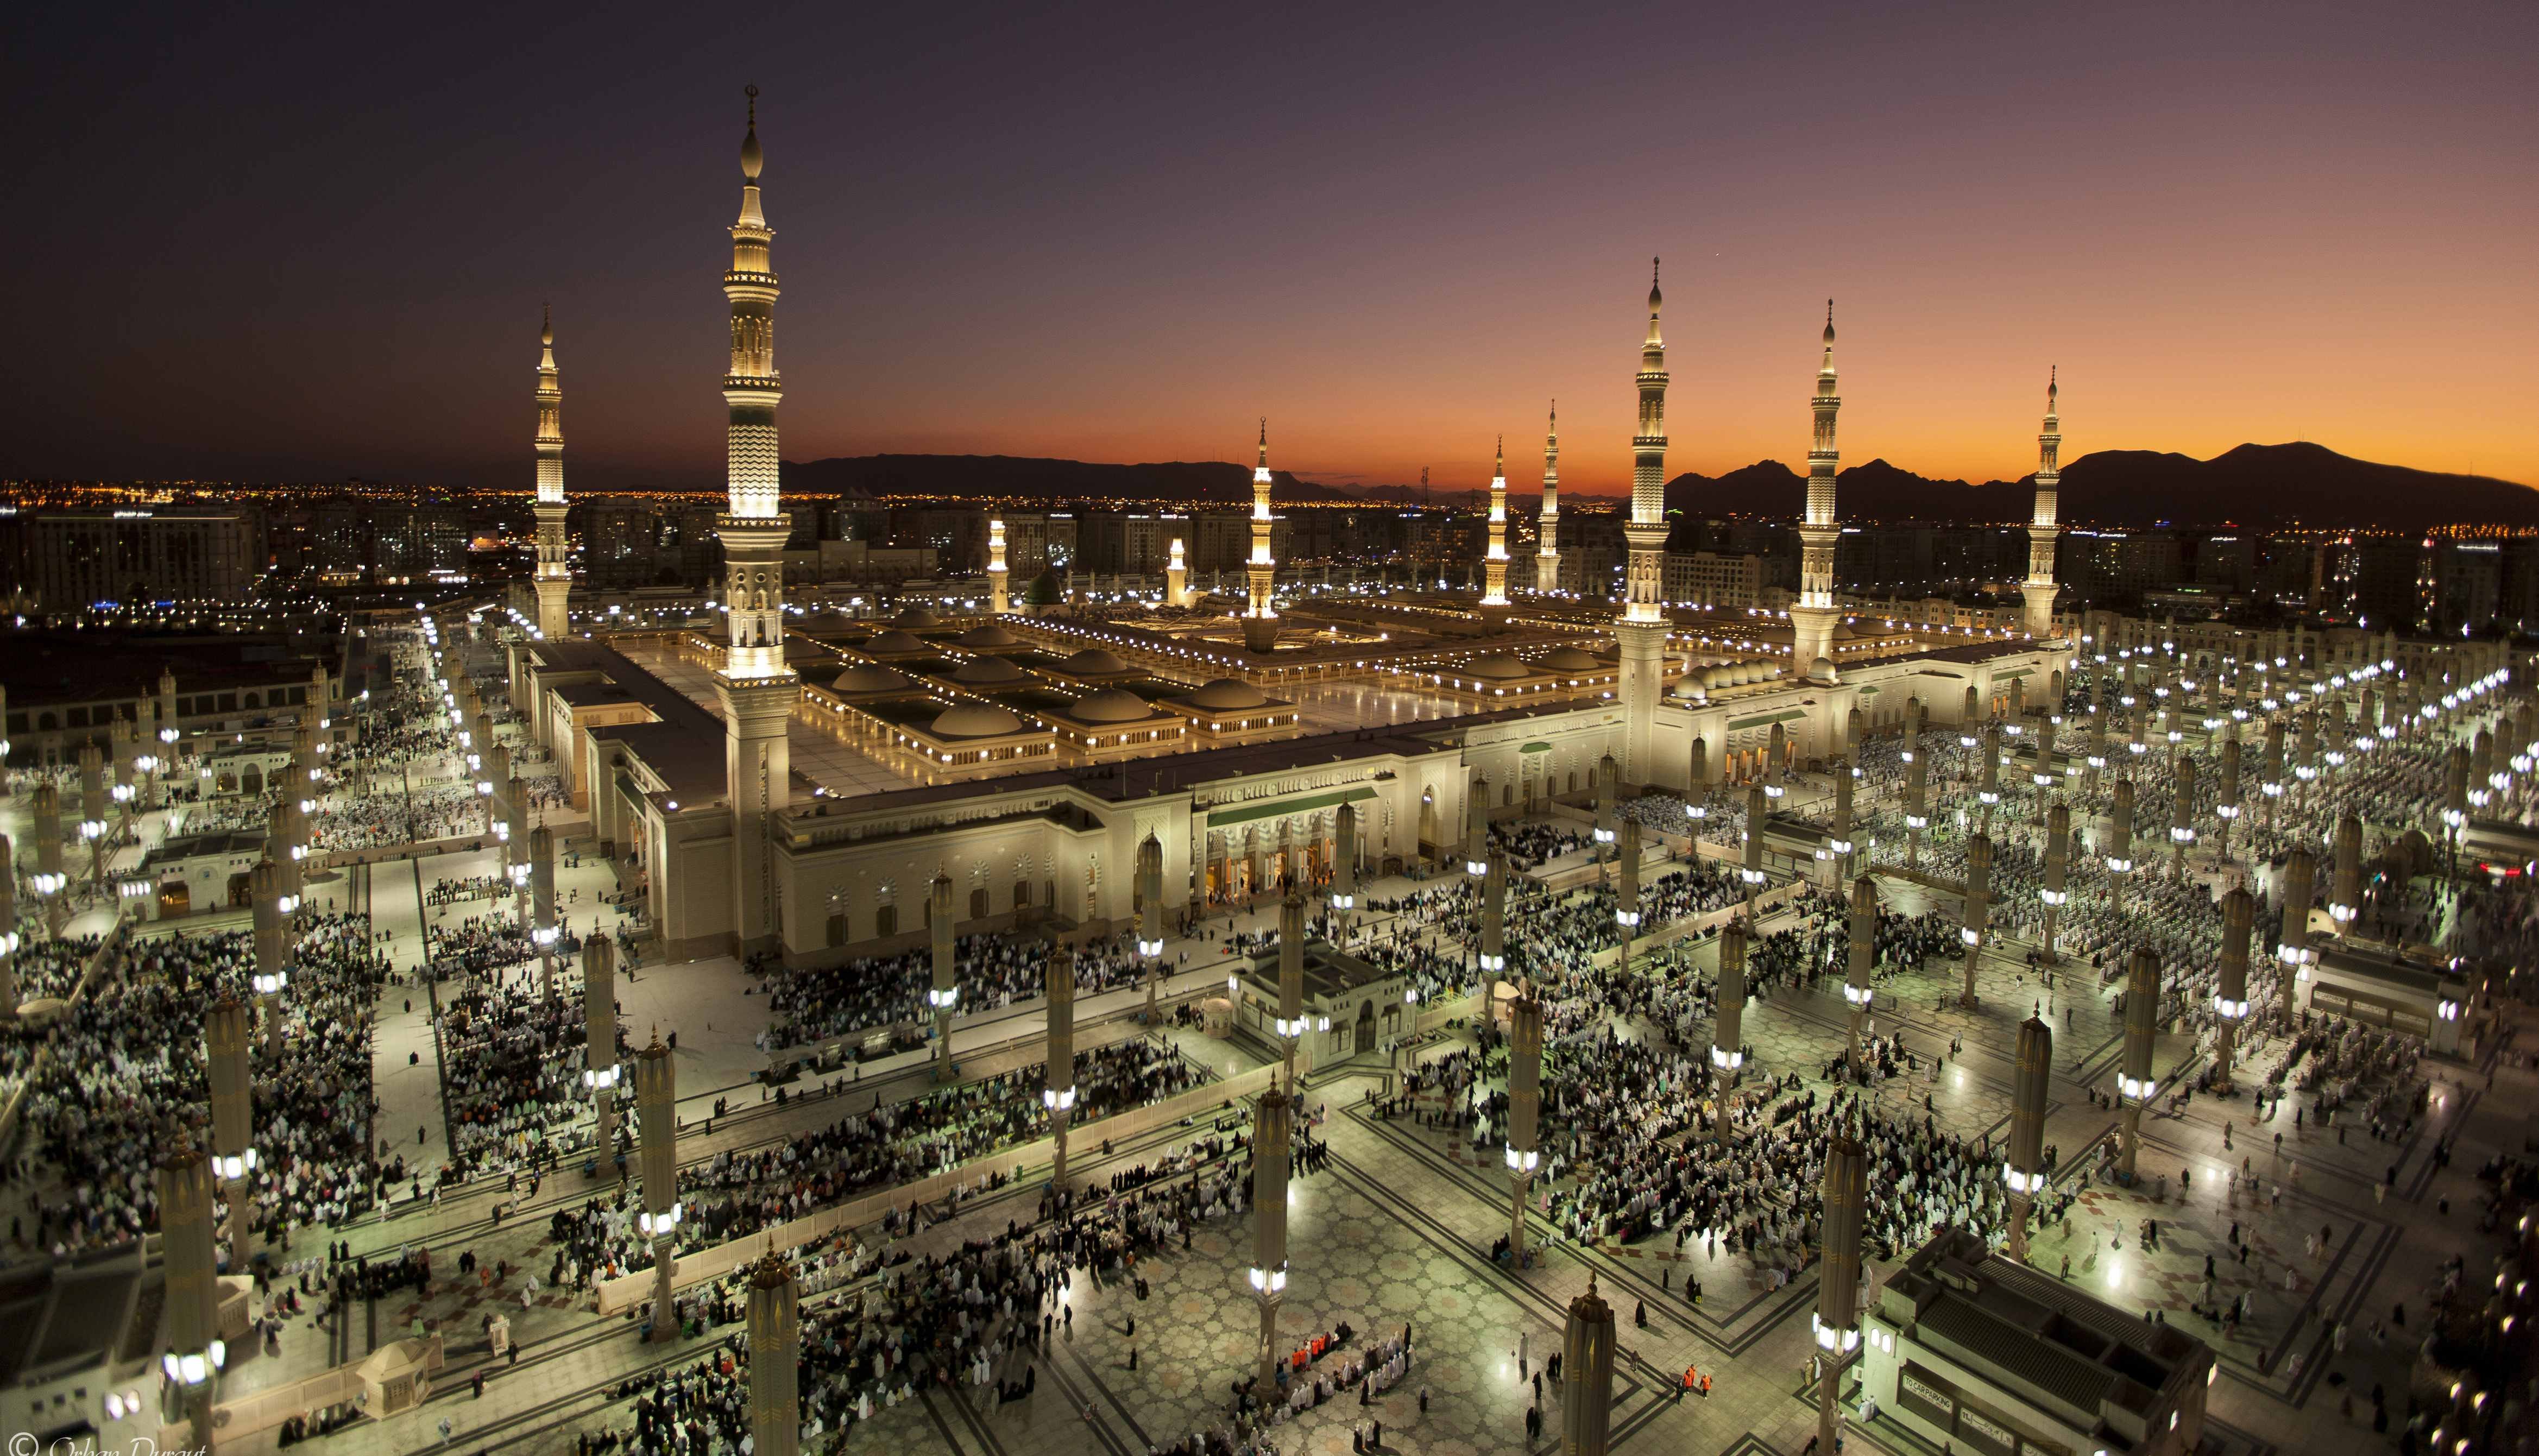 Медина что это. Аль-Масджид АН-Набави в Медине. Мечеть пророка (Масджид АН-Набави). Город Медина мечеть пророка. Мечеть АН-Набави, Медина (Саудовская Аравия).